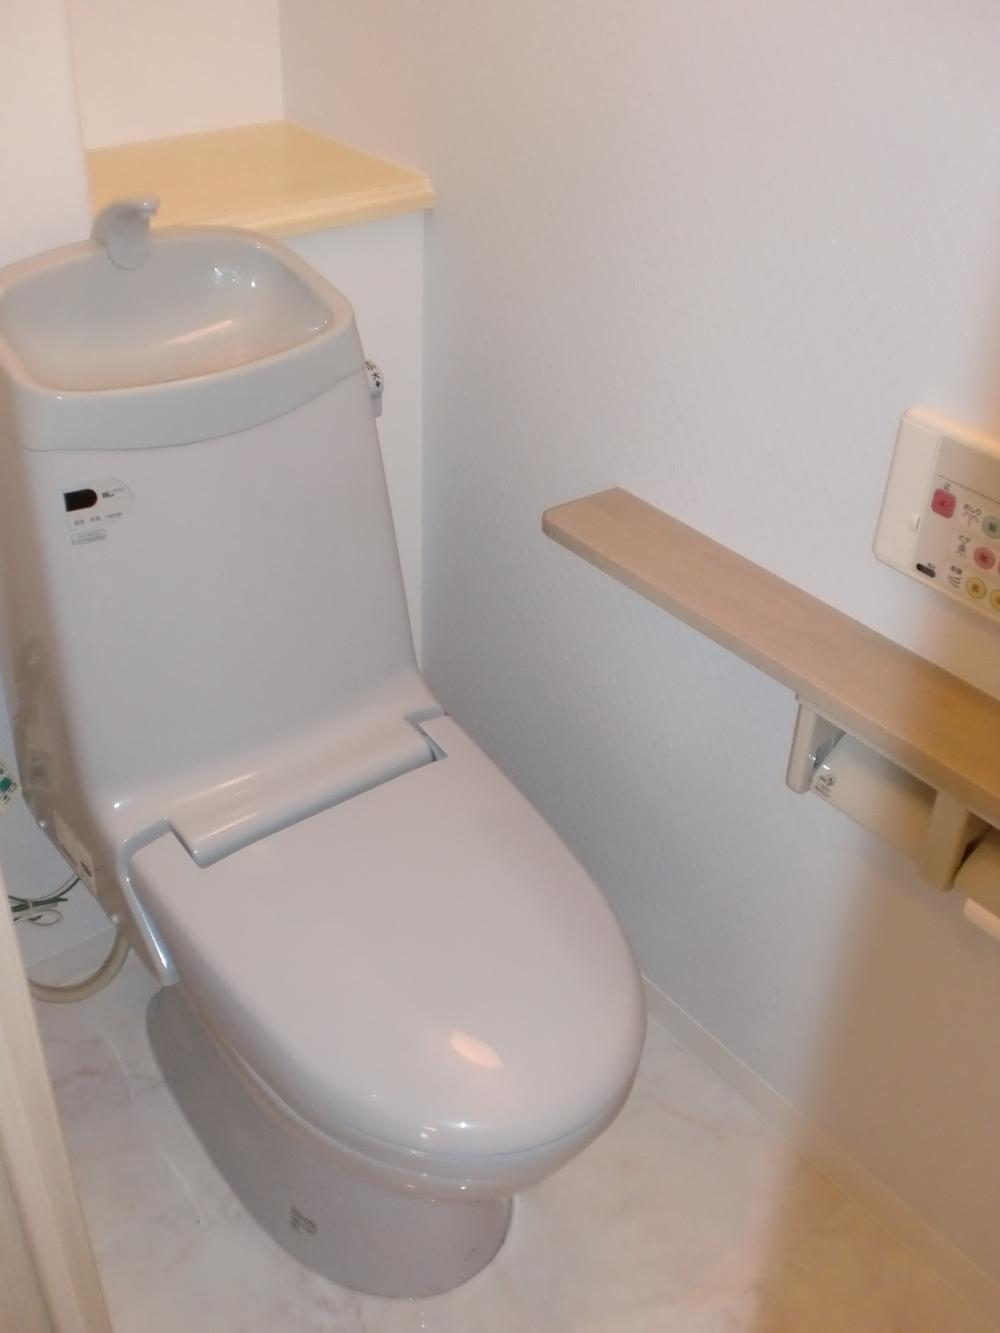 Toilet.  ■ Warm water washing toilet seat